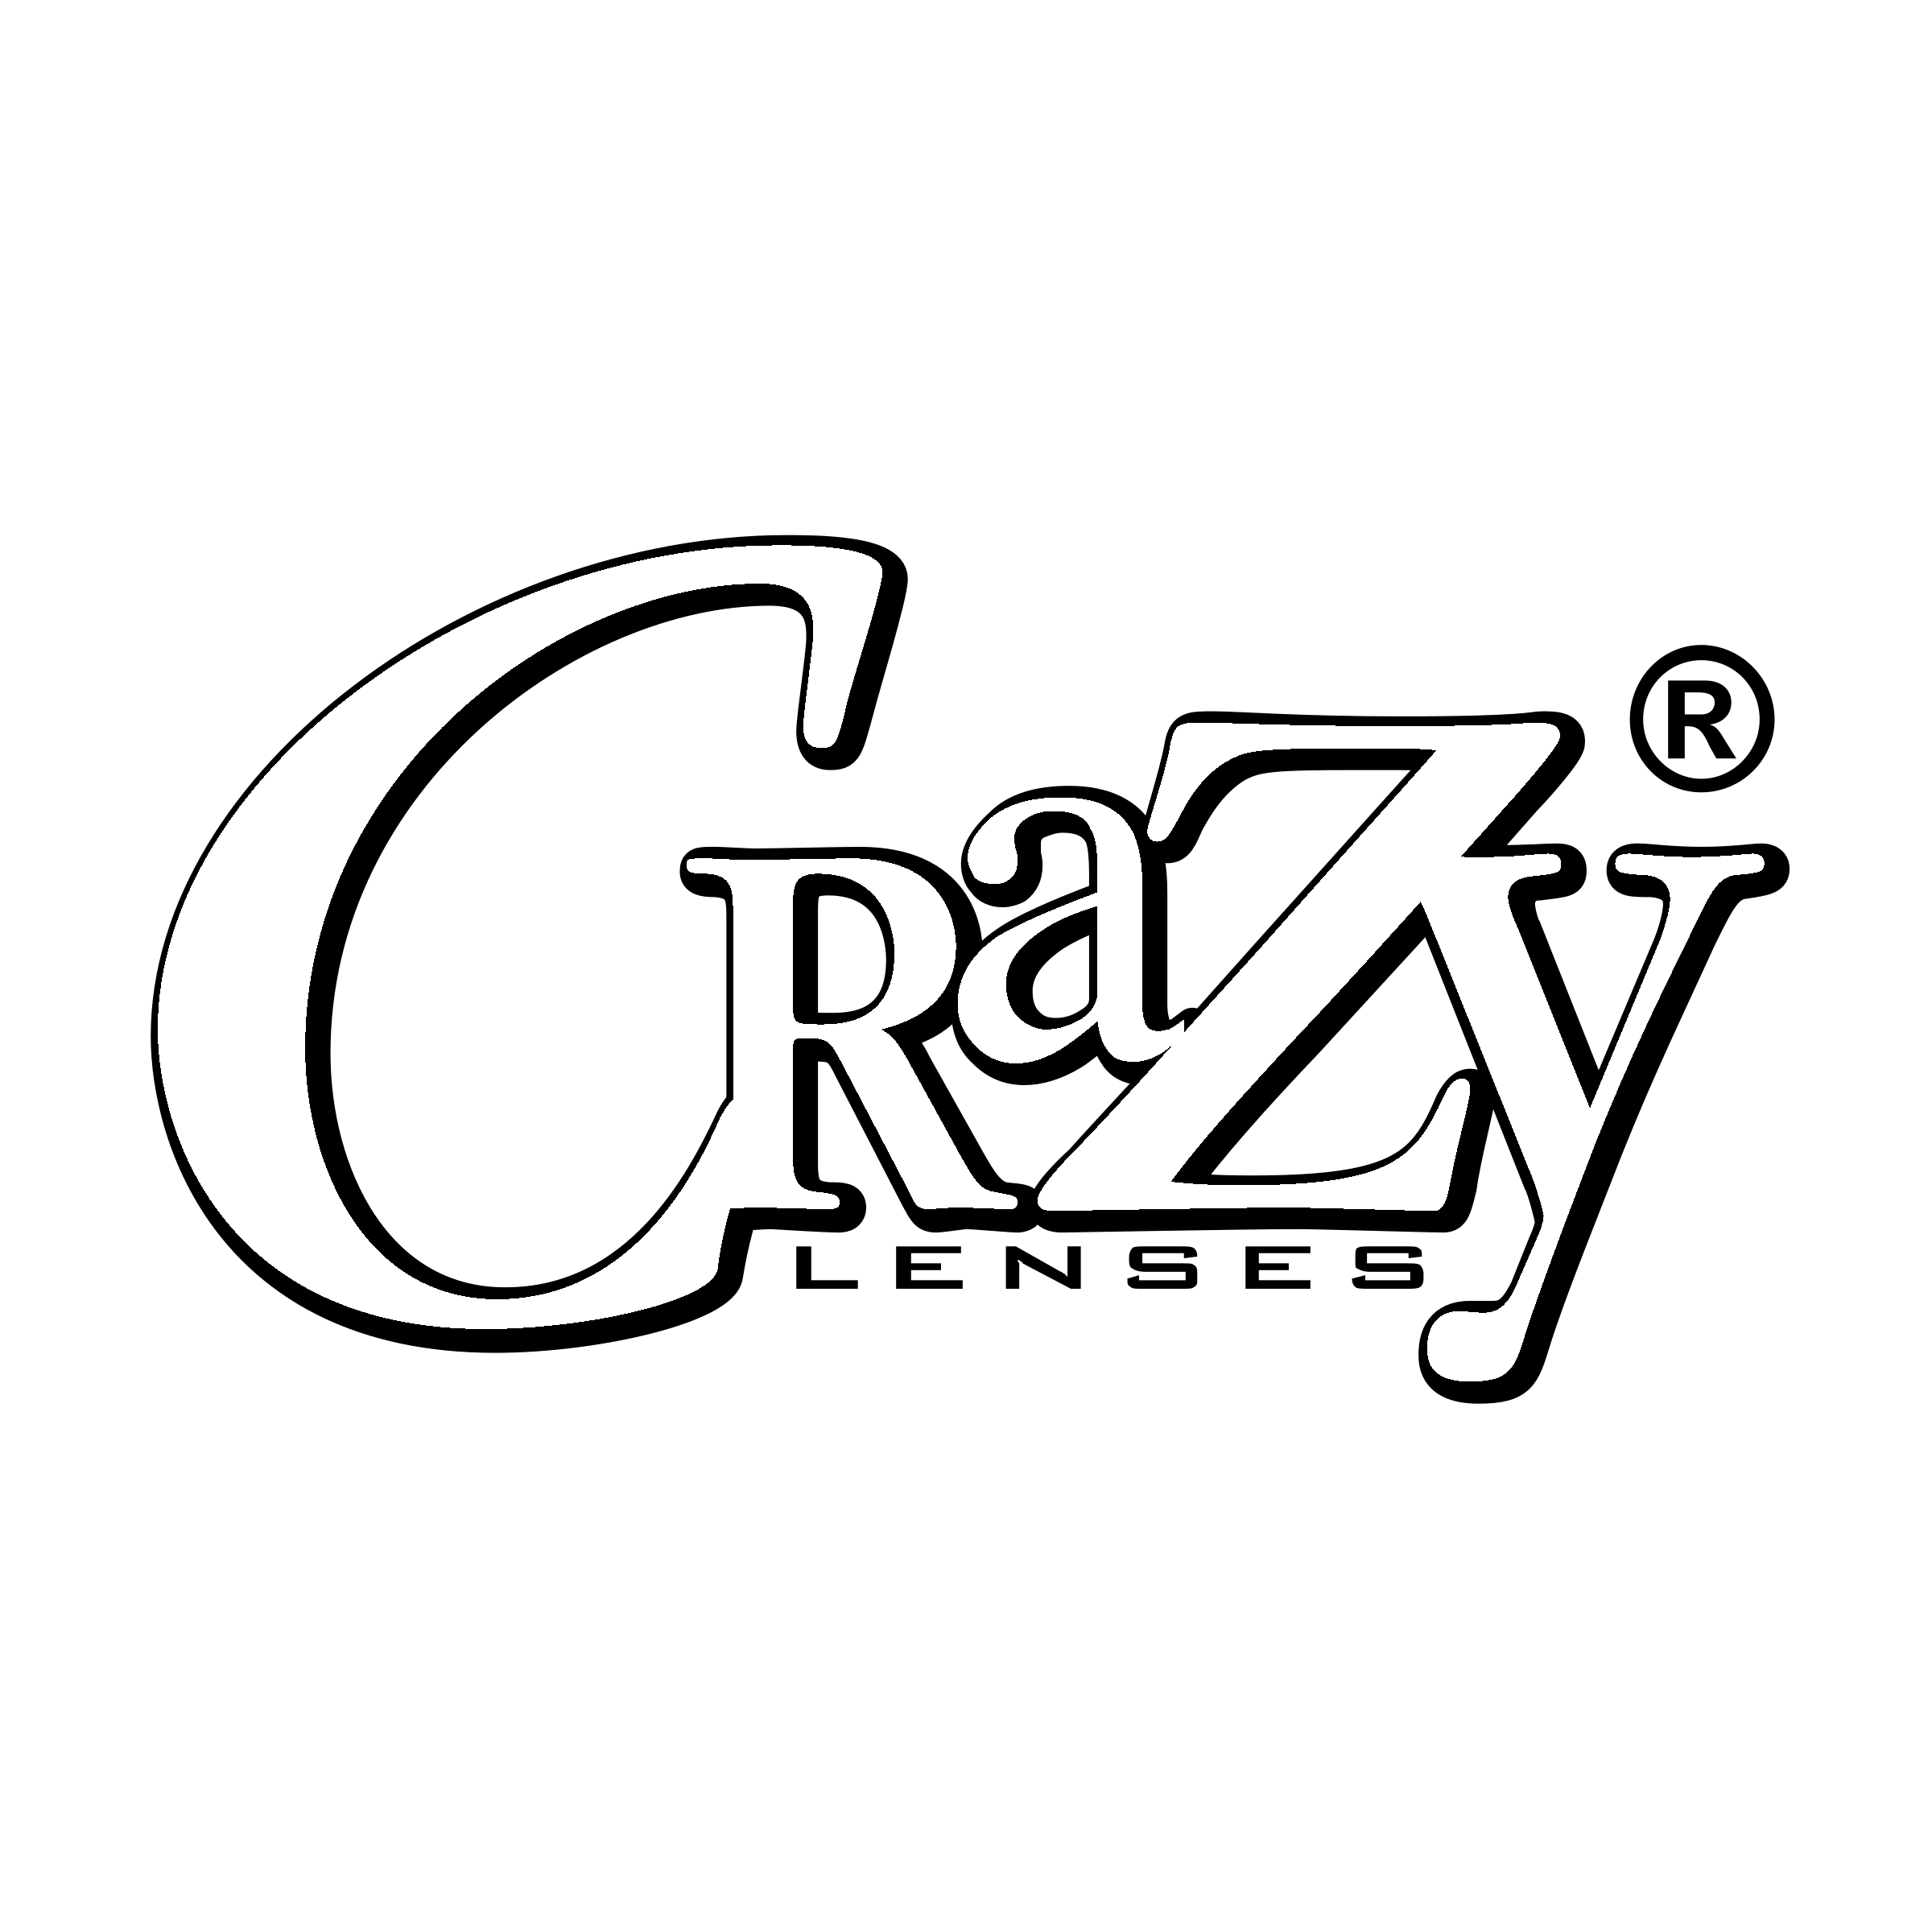 Crazy Logo - Crazy Lenses Logo PNG Transparent & SVG Vector - Freebie Supply